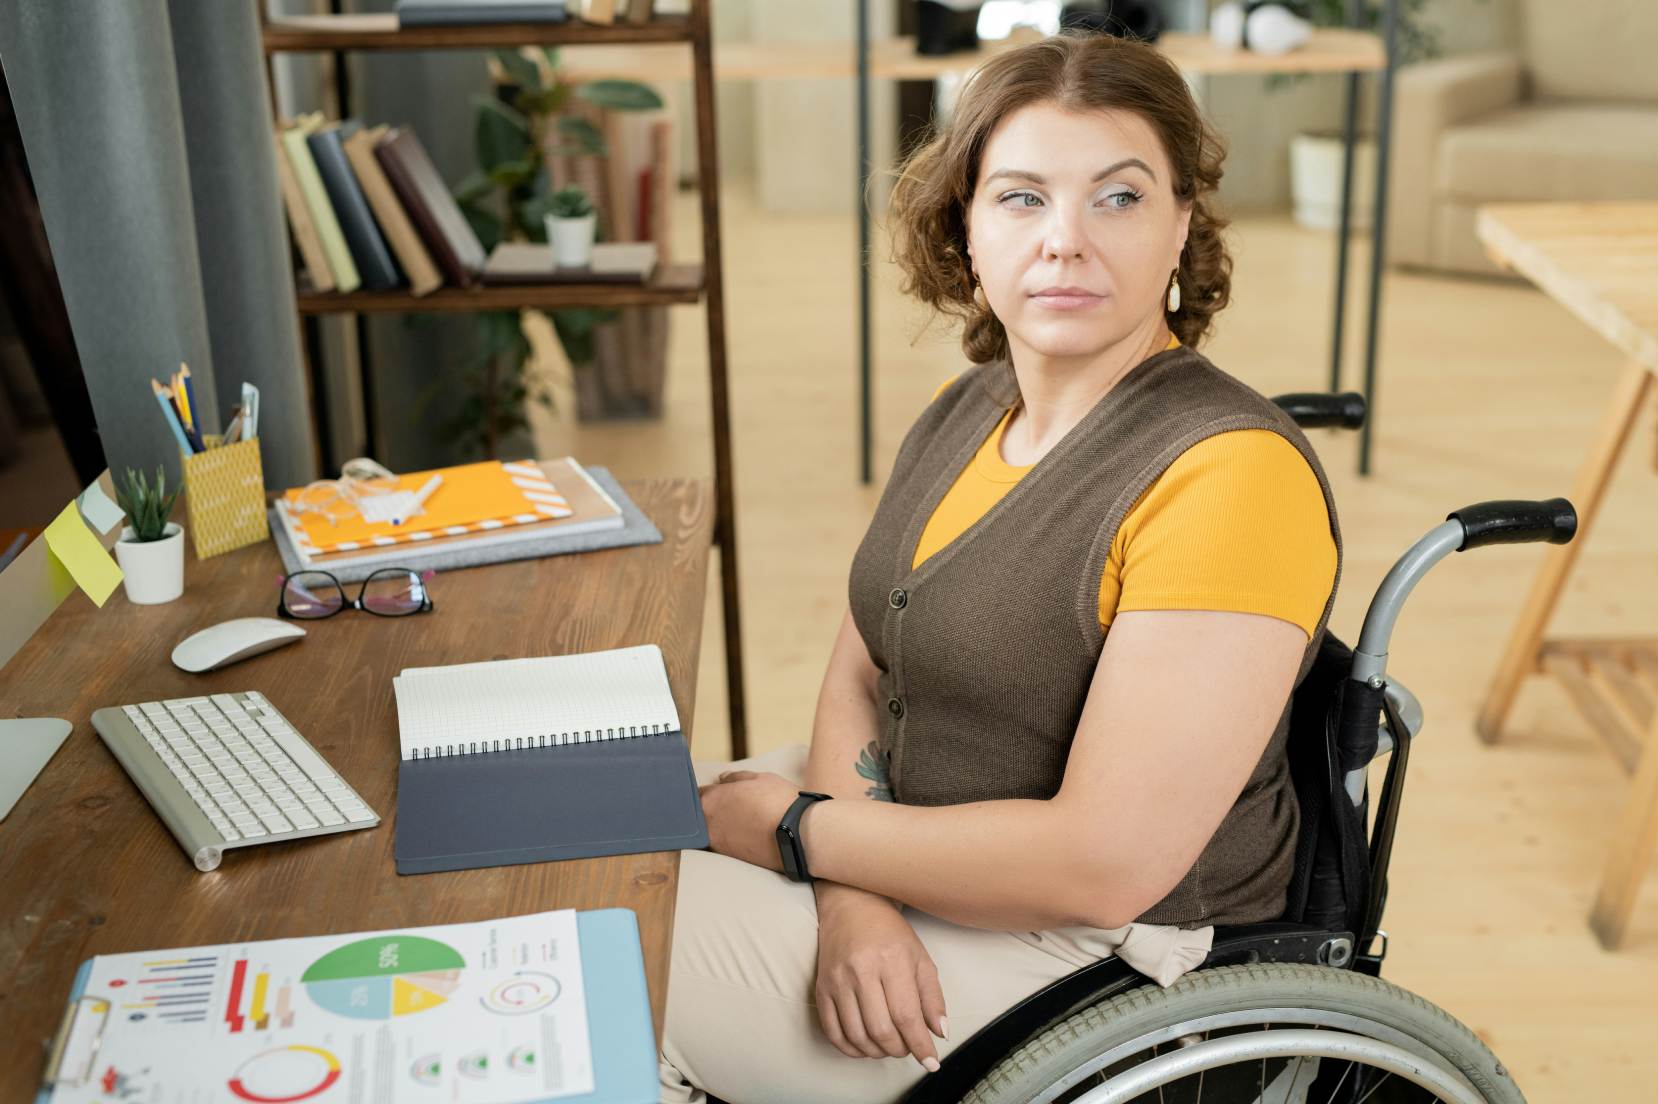 donna con disabilità motoria siede al tavolo davanti alla tastiera di un pc